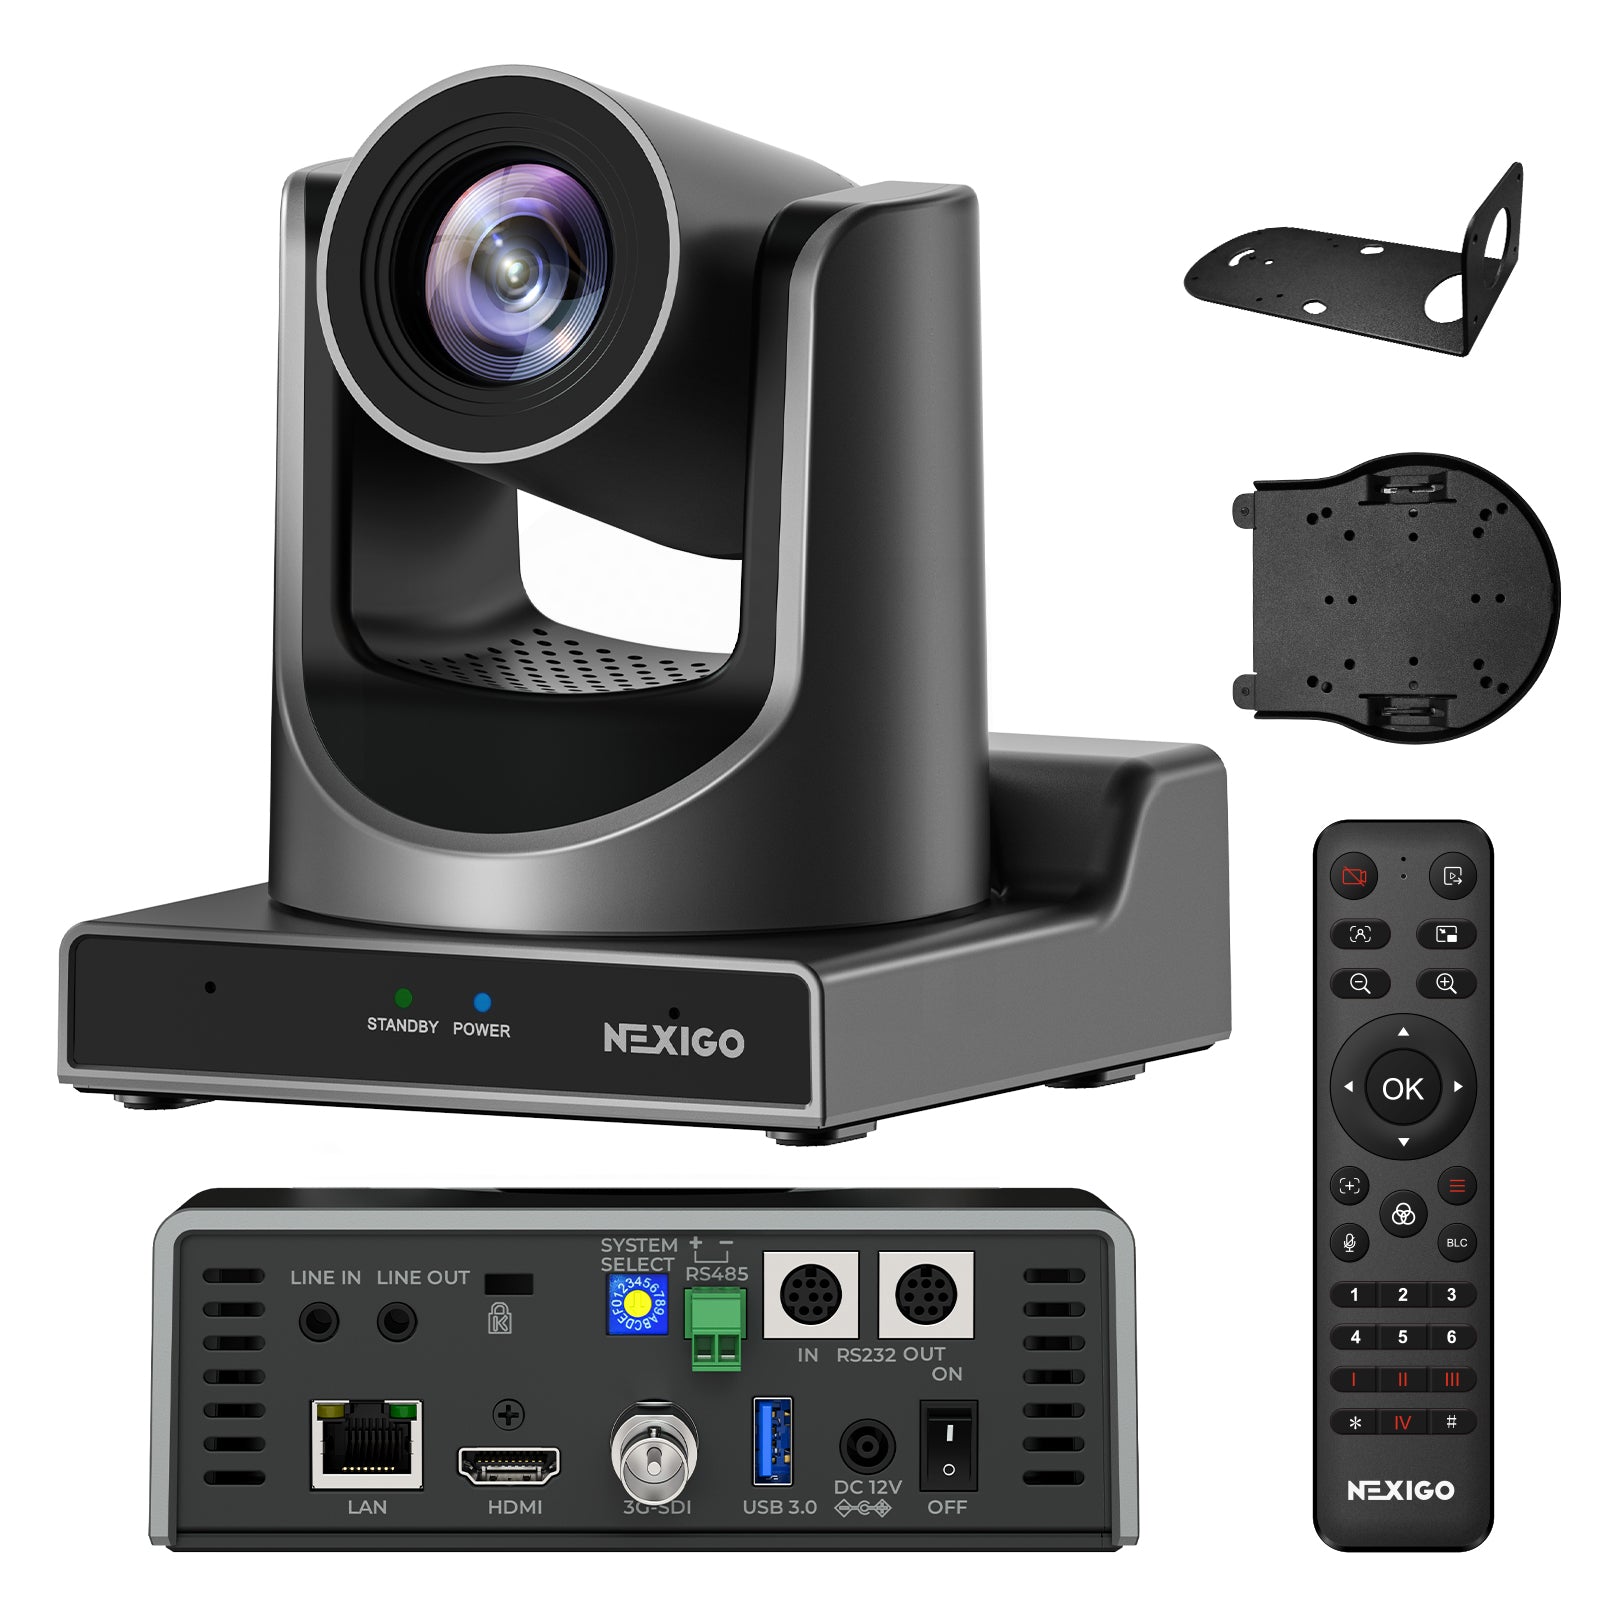 NexiGo PTZ Camera 20X Optical Zoom with PoE HDMI/SDI/USB/LAN IP Streaming Outputs